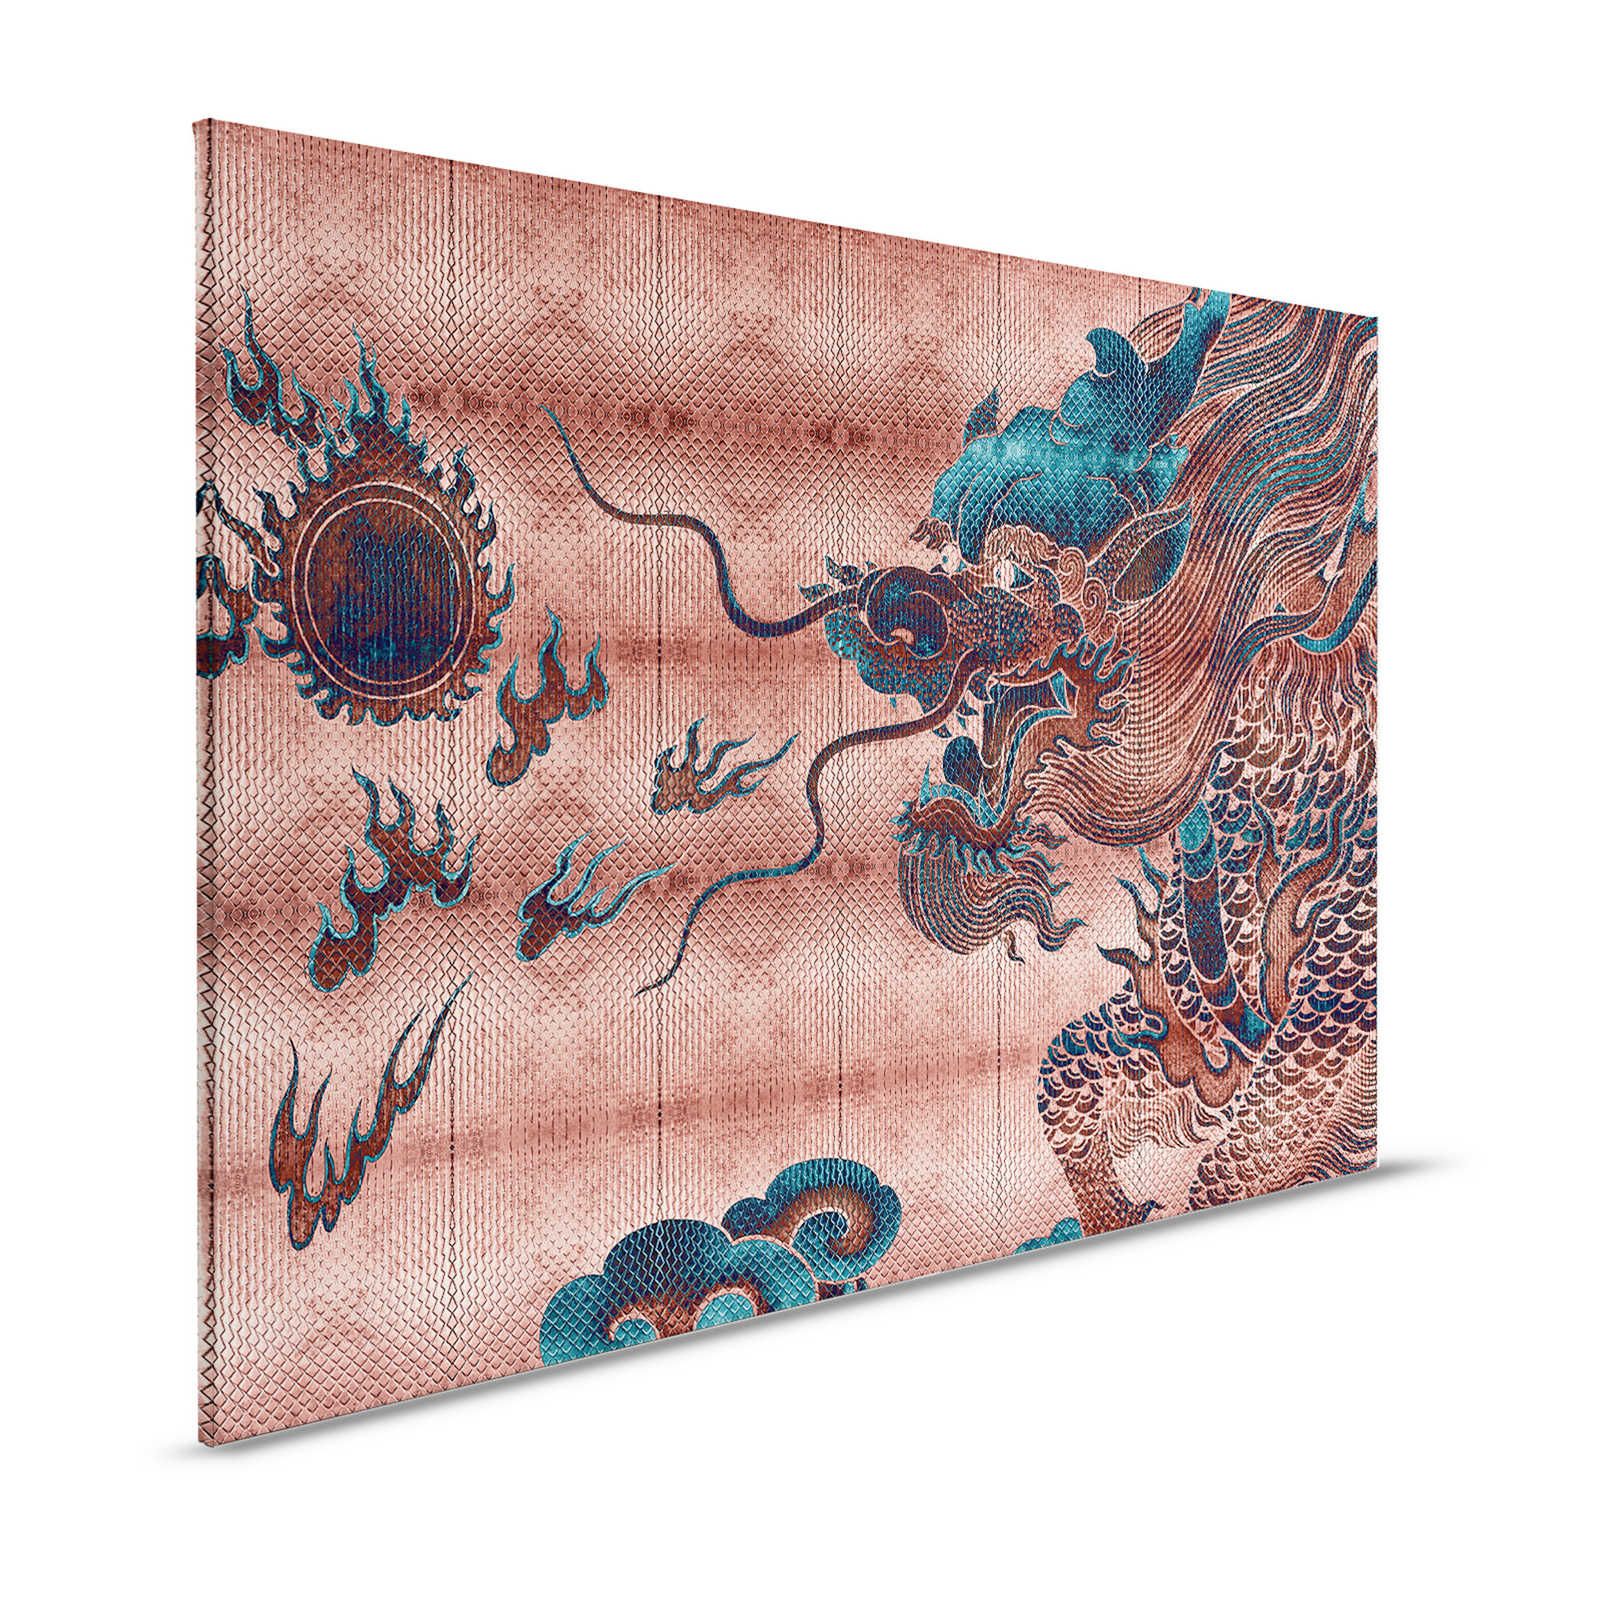 Shenzen 1 - Quadro su tela Dragon Asian Syle con colori metallici - 1,20 m x 0,80 m
